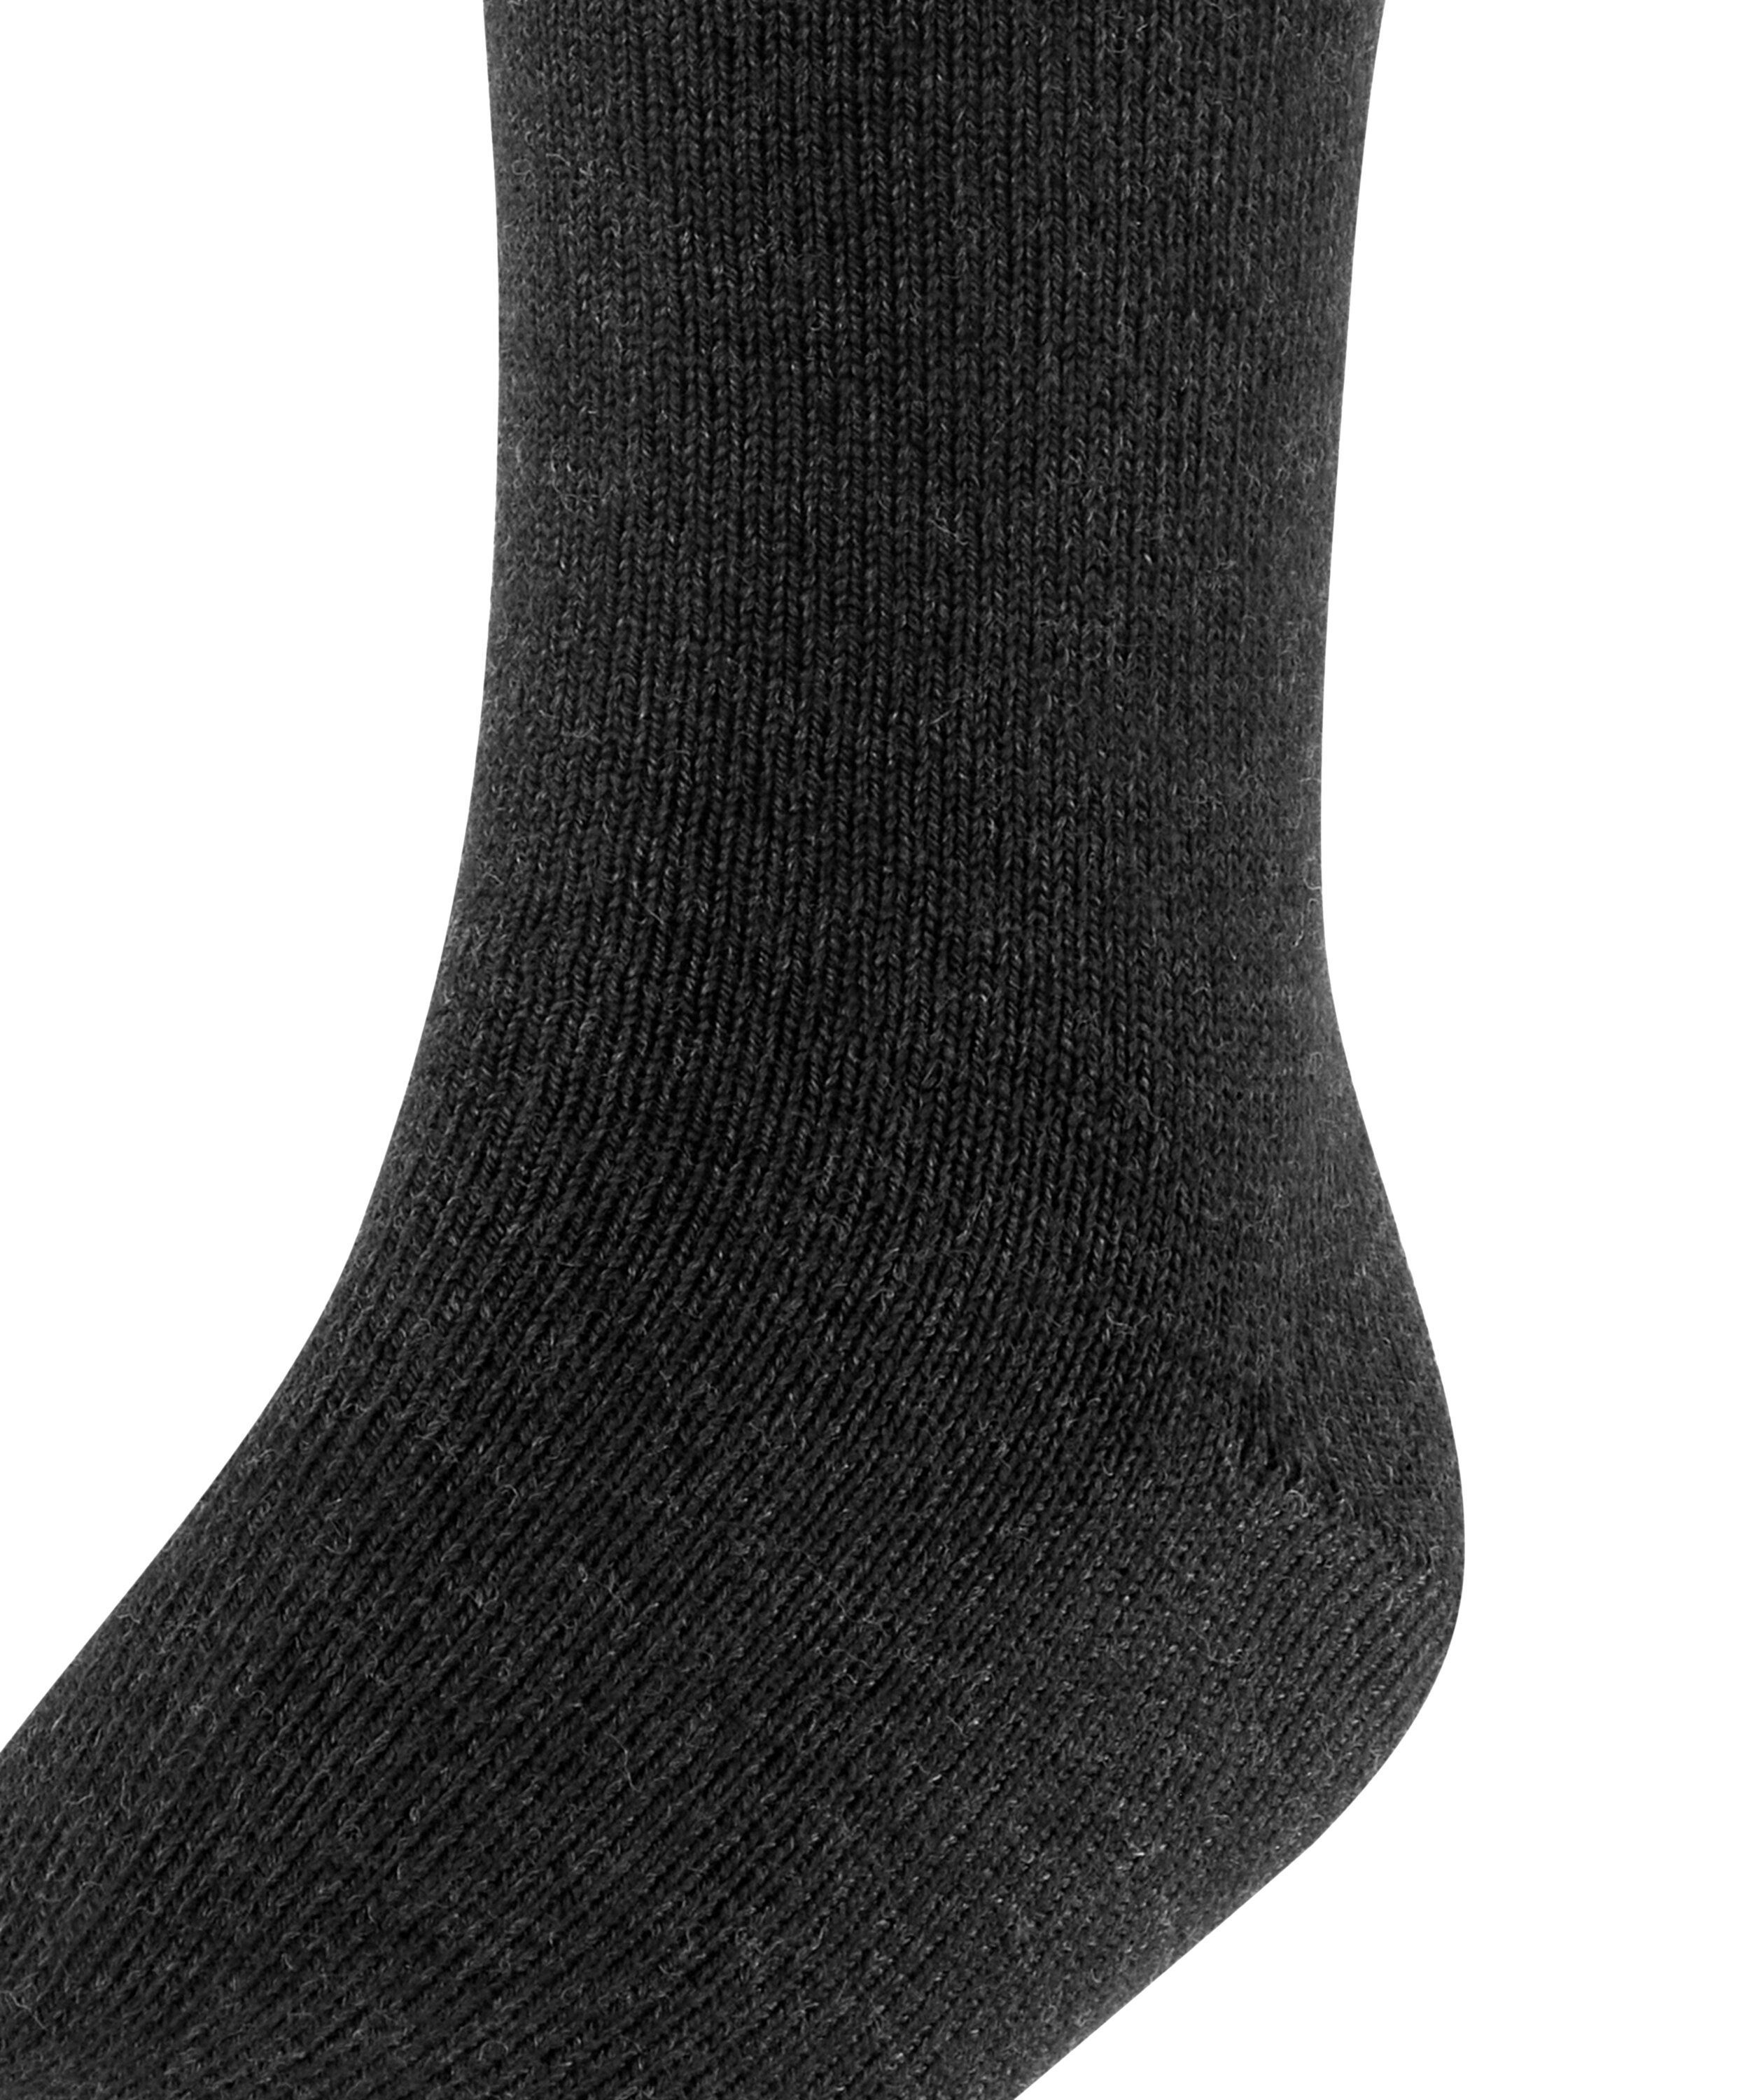 Comfort FALKE Wool (1-Paar) anthra.mel Socken (3080)